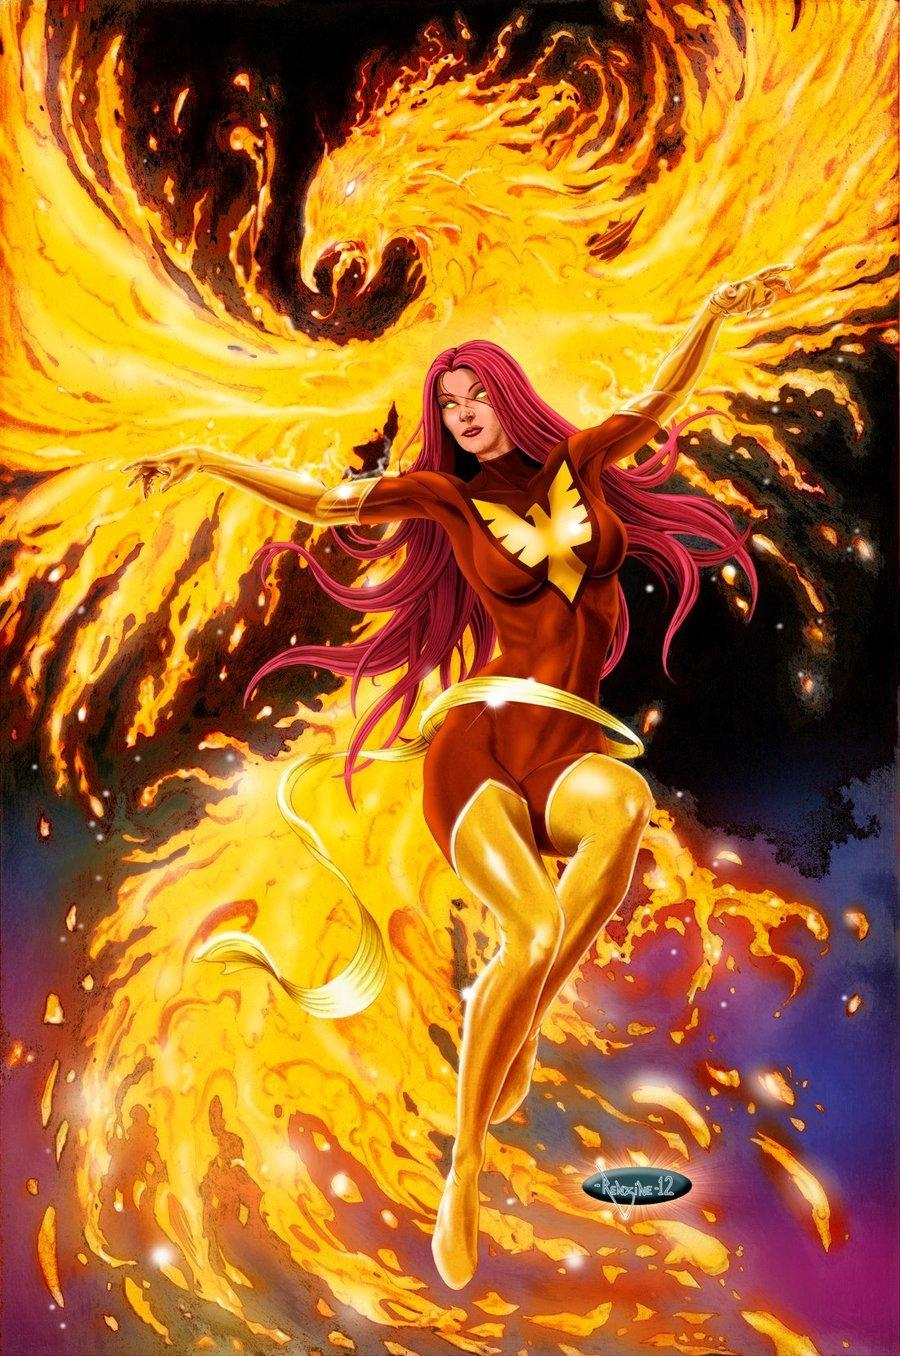 Dark Phoenix wallpaper, Comics, HQ Dark Phoenix picture 4K